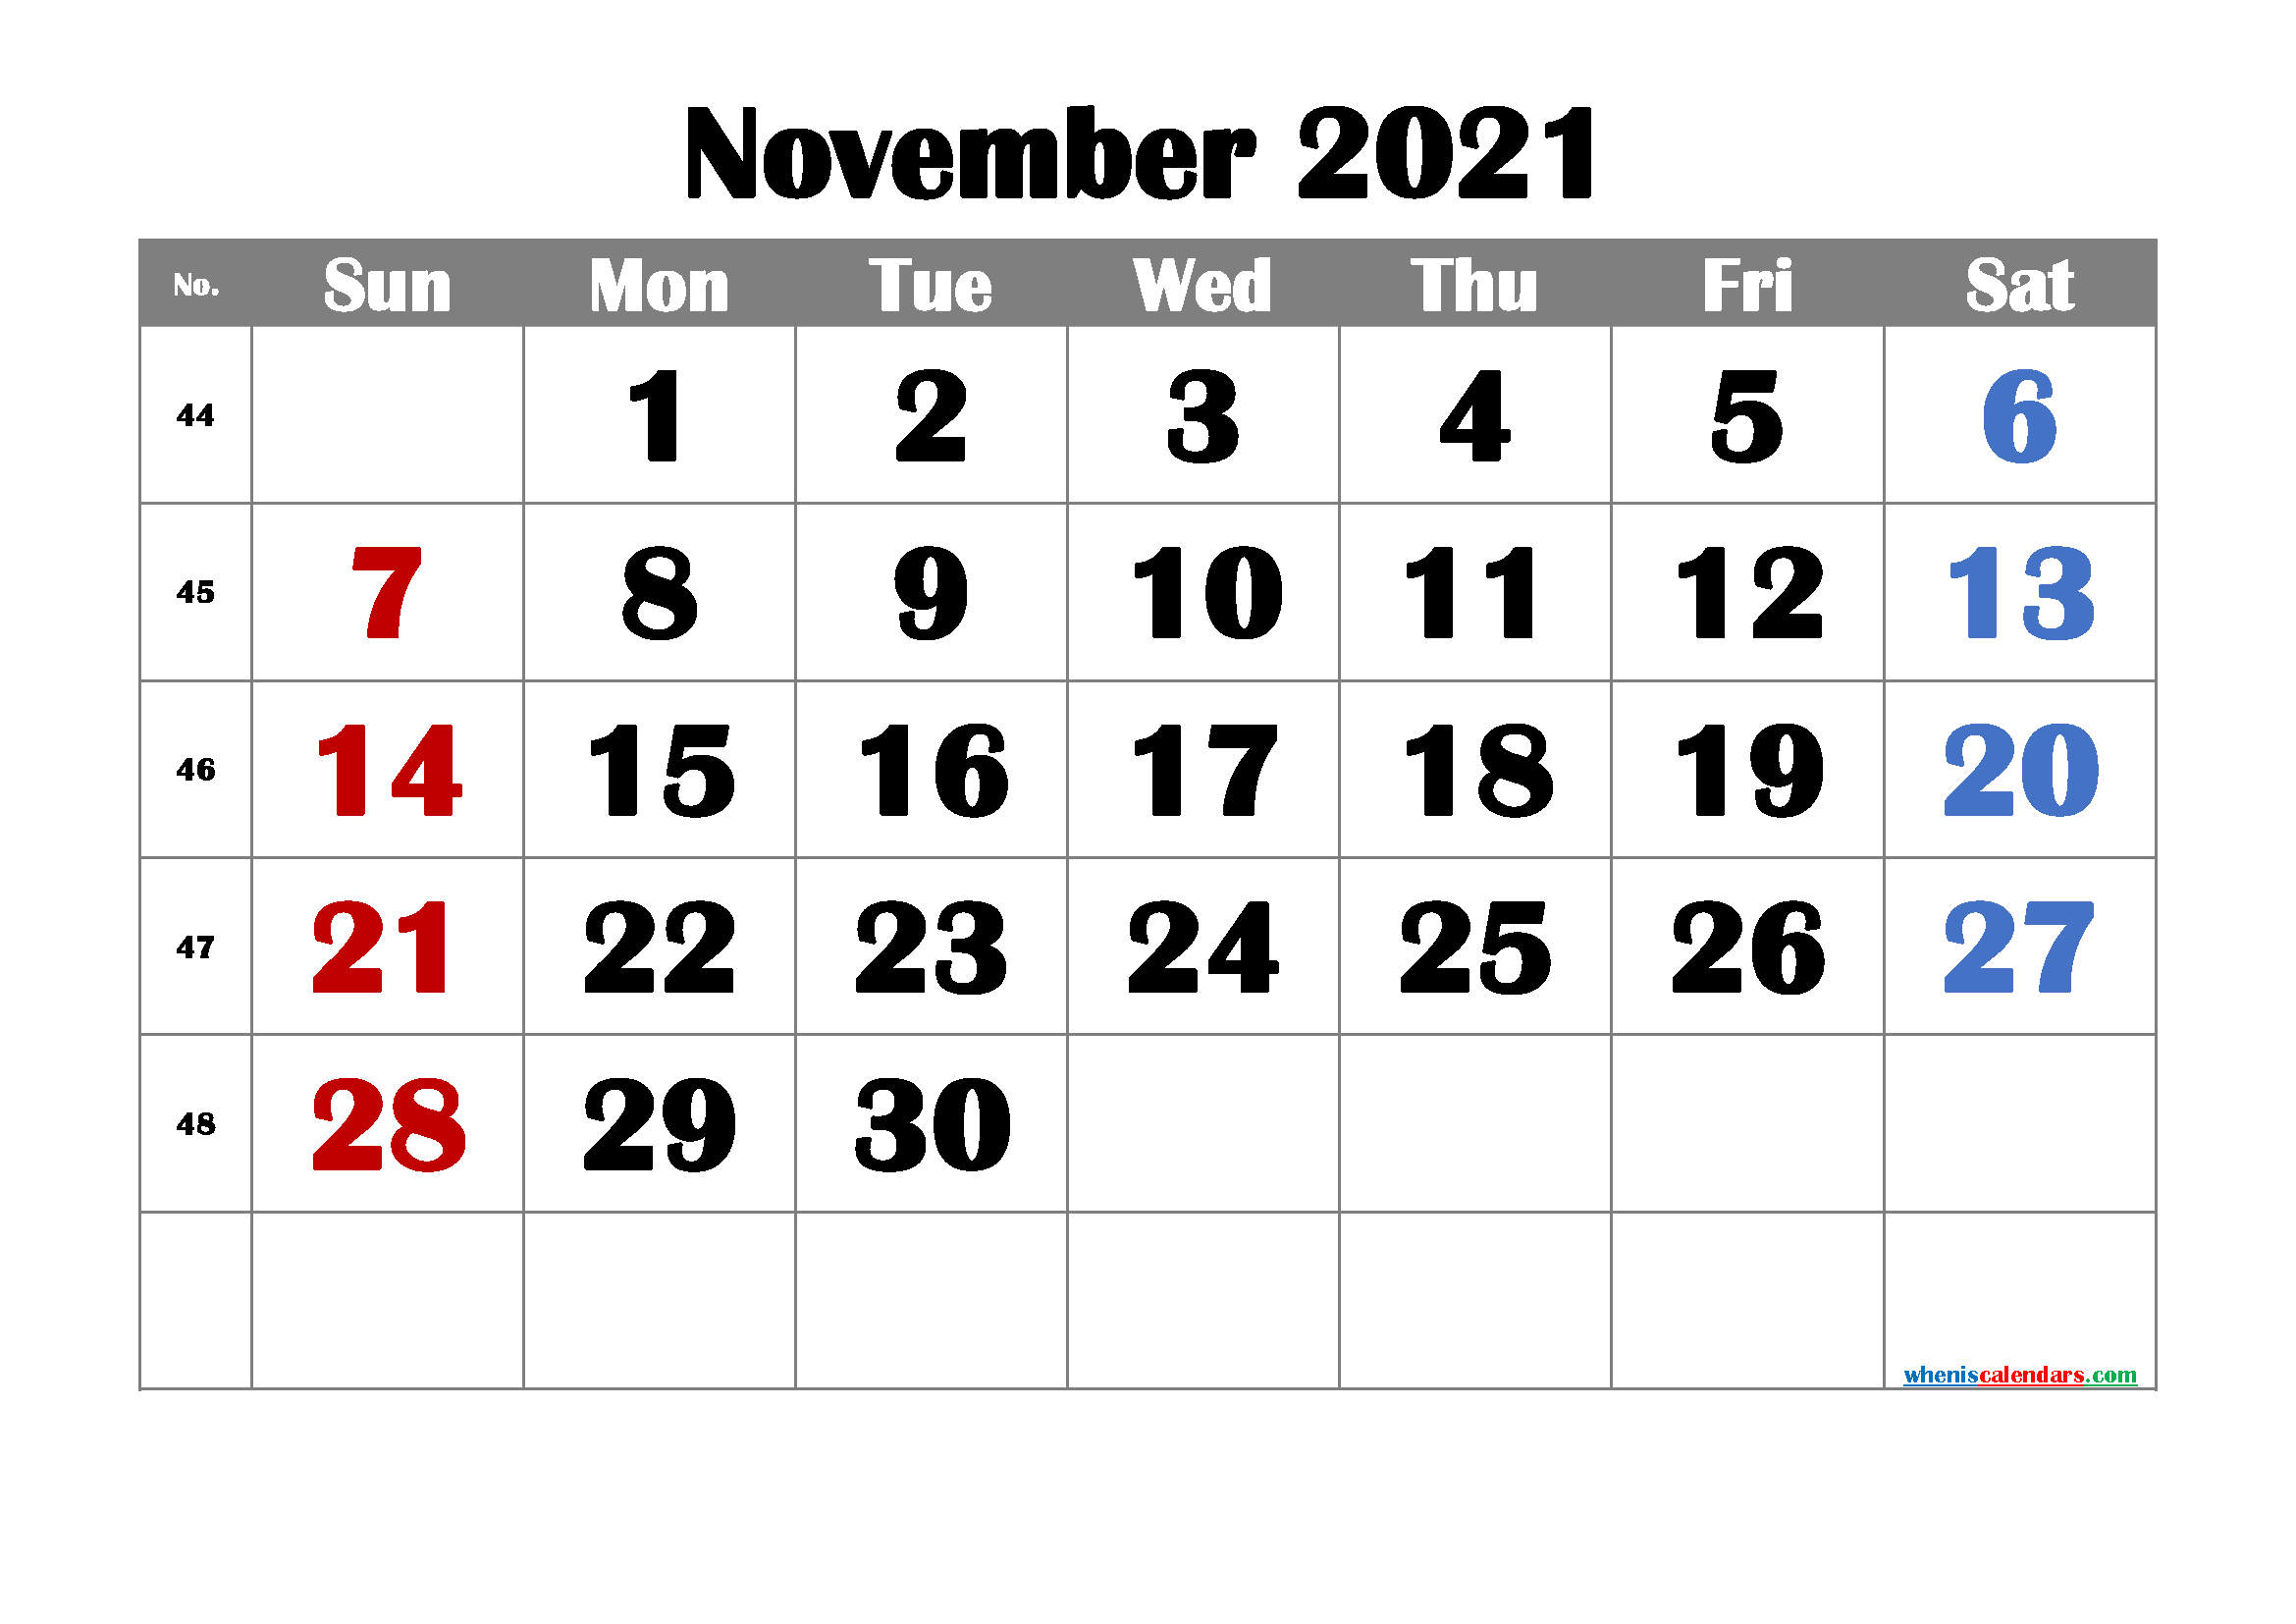 Free Printable November 2021 Calendar Www.a-Printable-Calendar.com November 2021